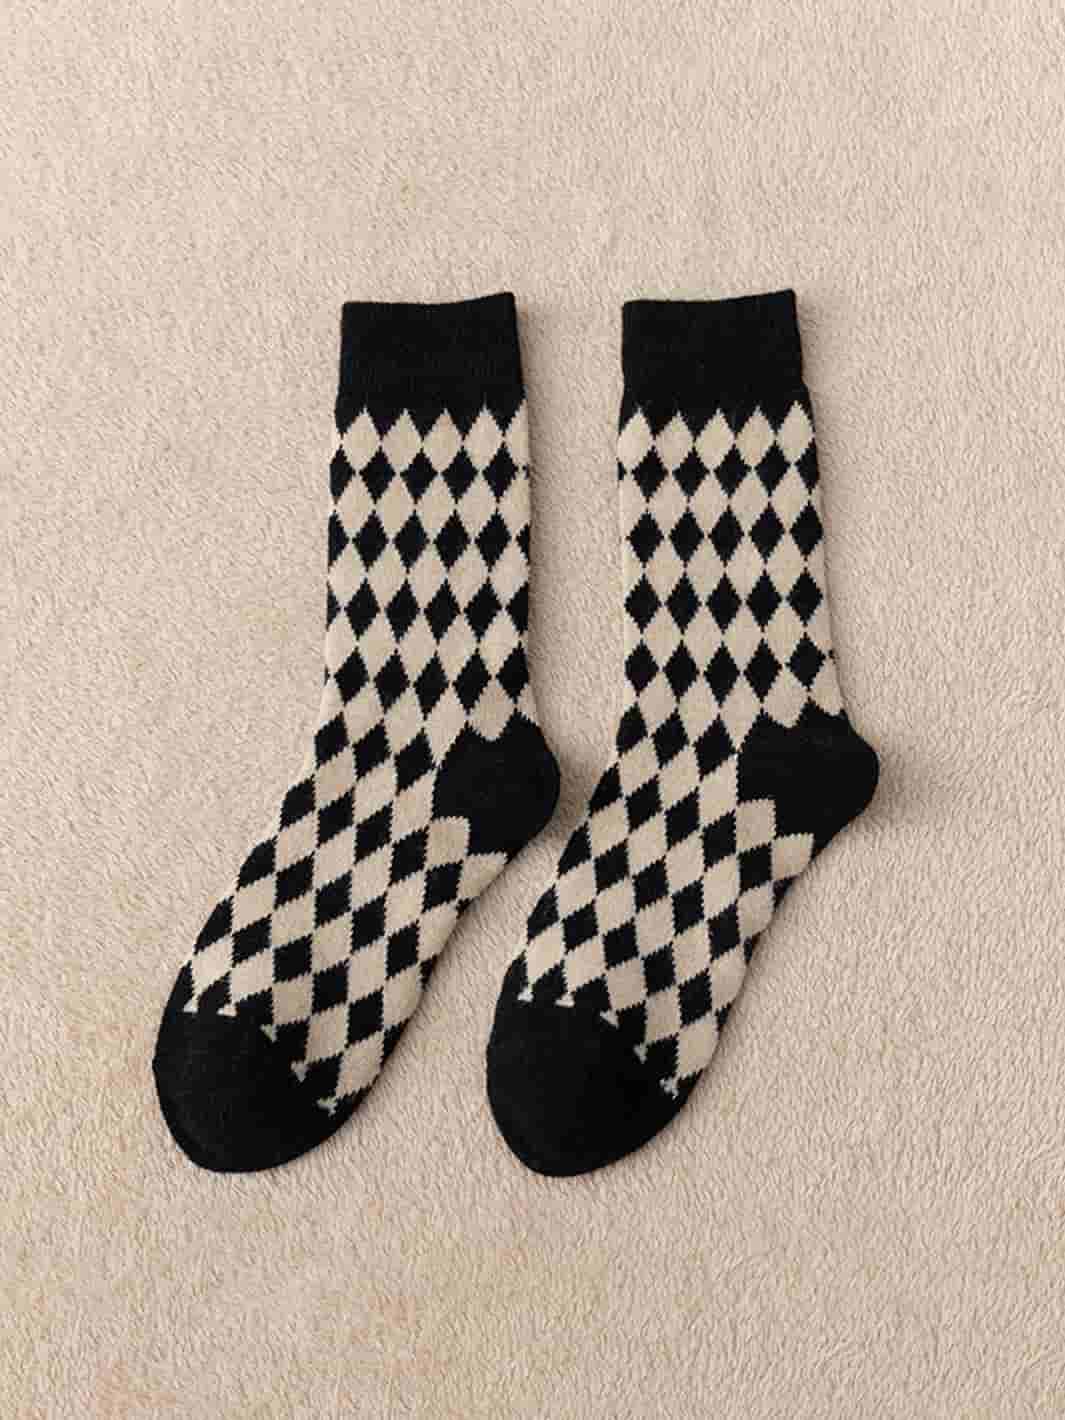 Retro cotton socks